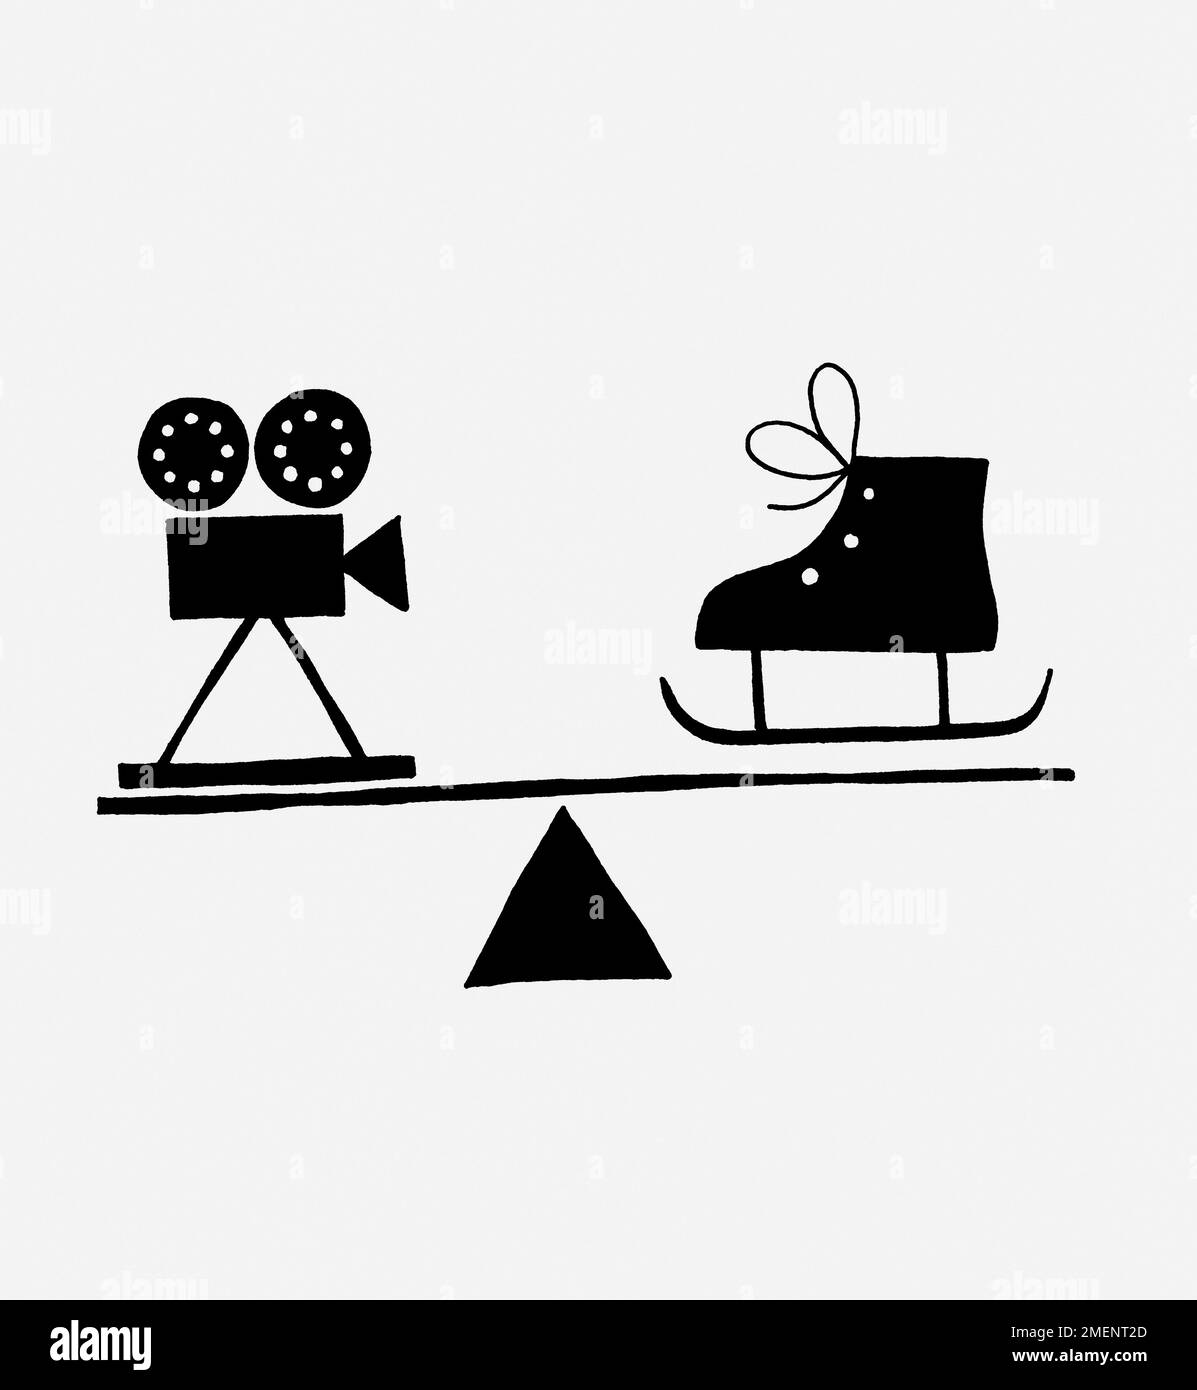 Illustrazione in bianco e nero di una serie di bilance con telecamera a film sul lato e pattina sul ghiaccio sull'altro lato (che illustra il valore relativo del costo della visita al cinema e del divertimento sulla pista di pattinaggio) Foto Stock